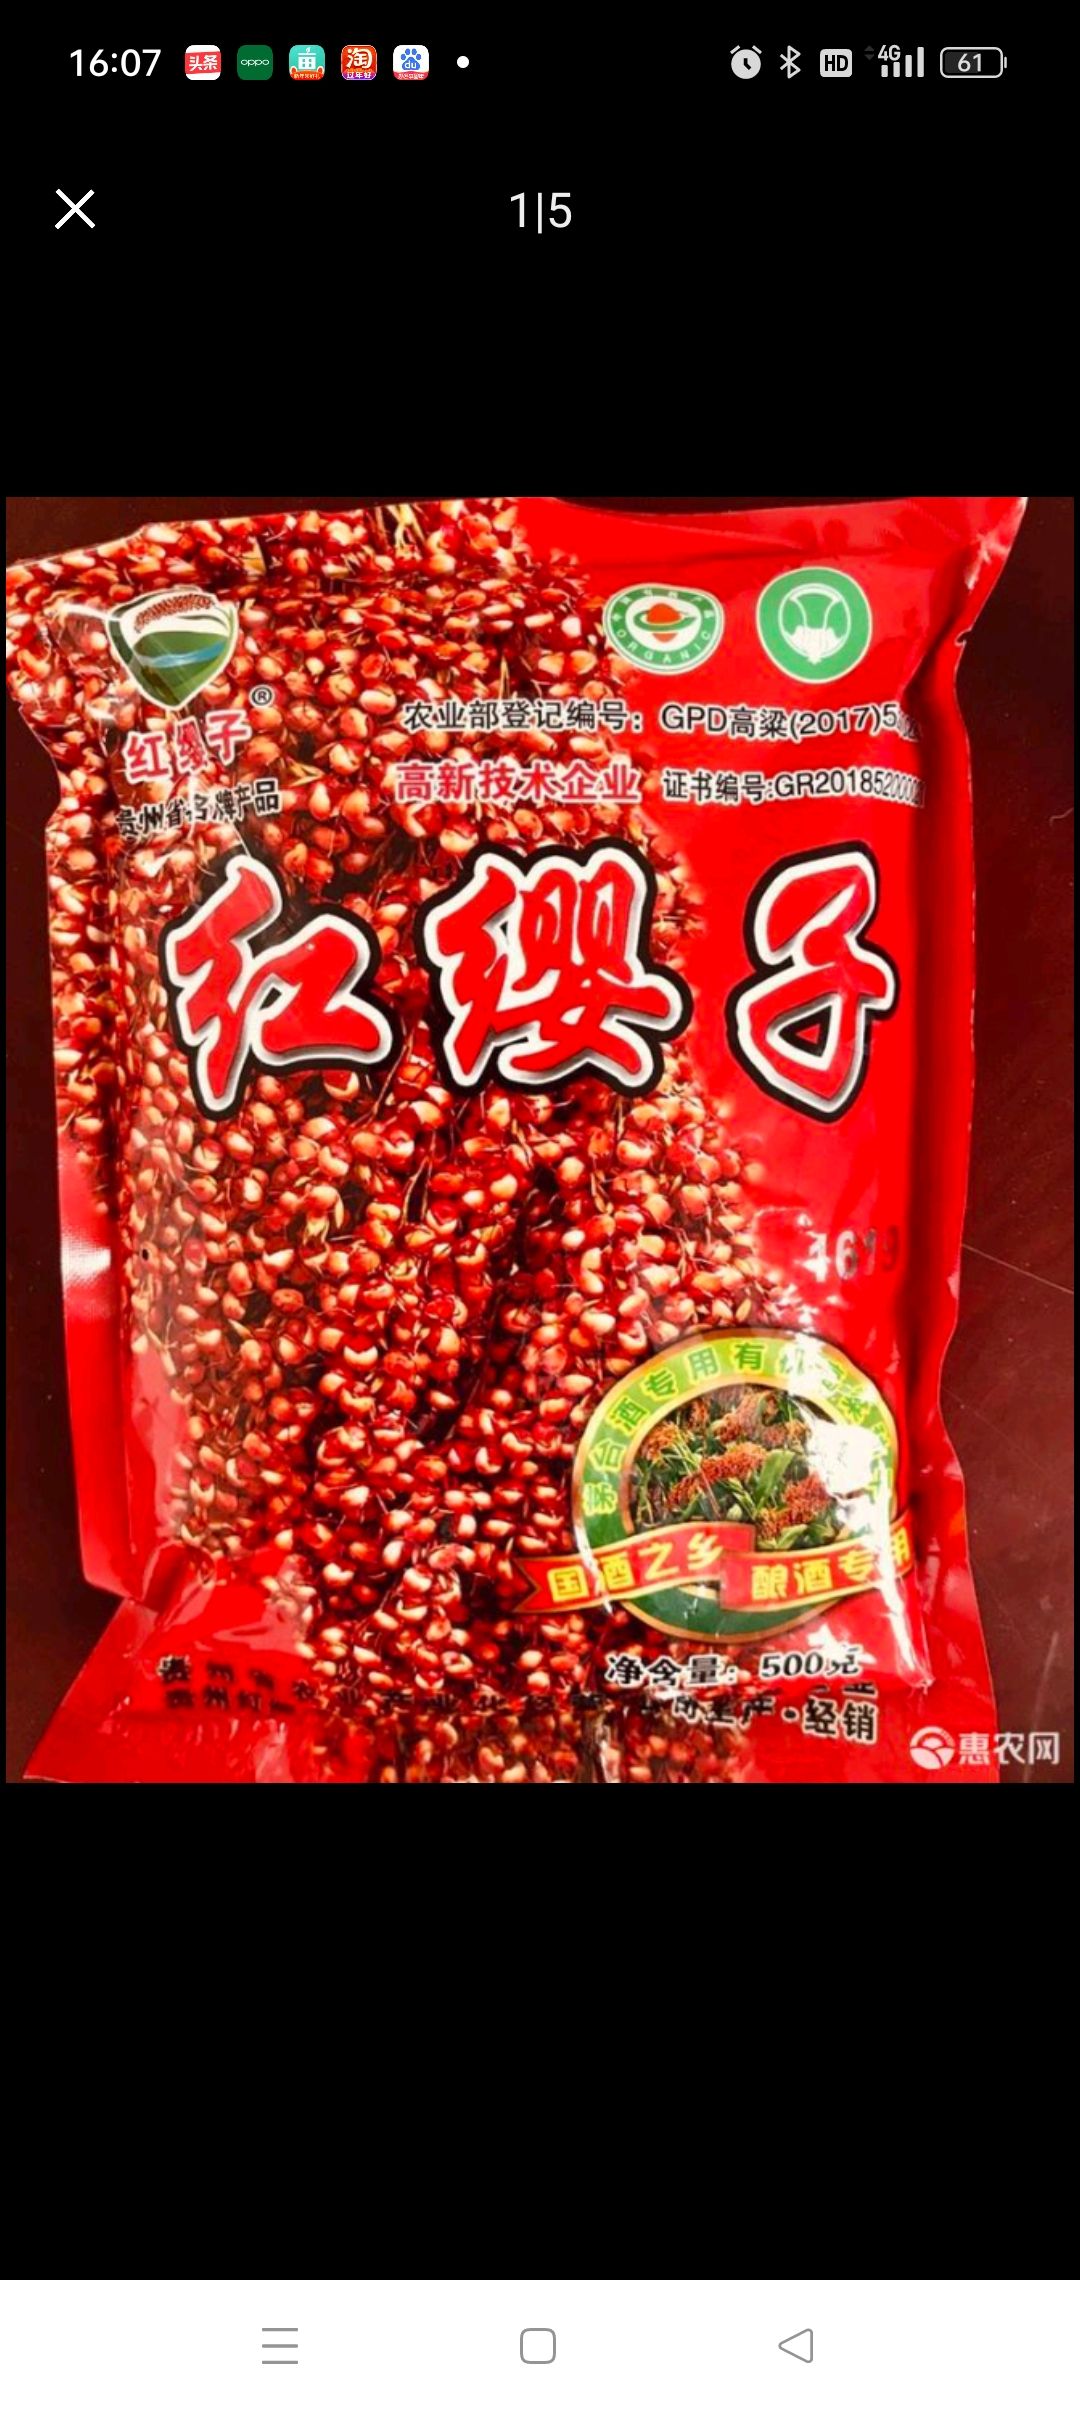 安龙县红缨子高粱种子 批发零售